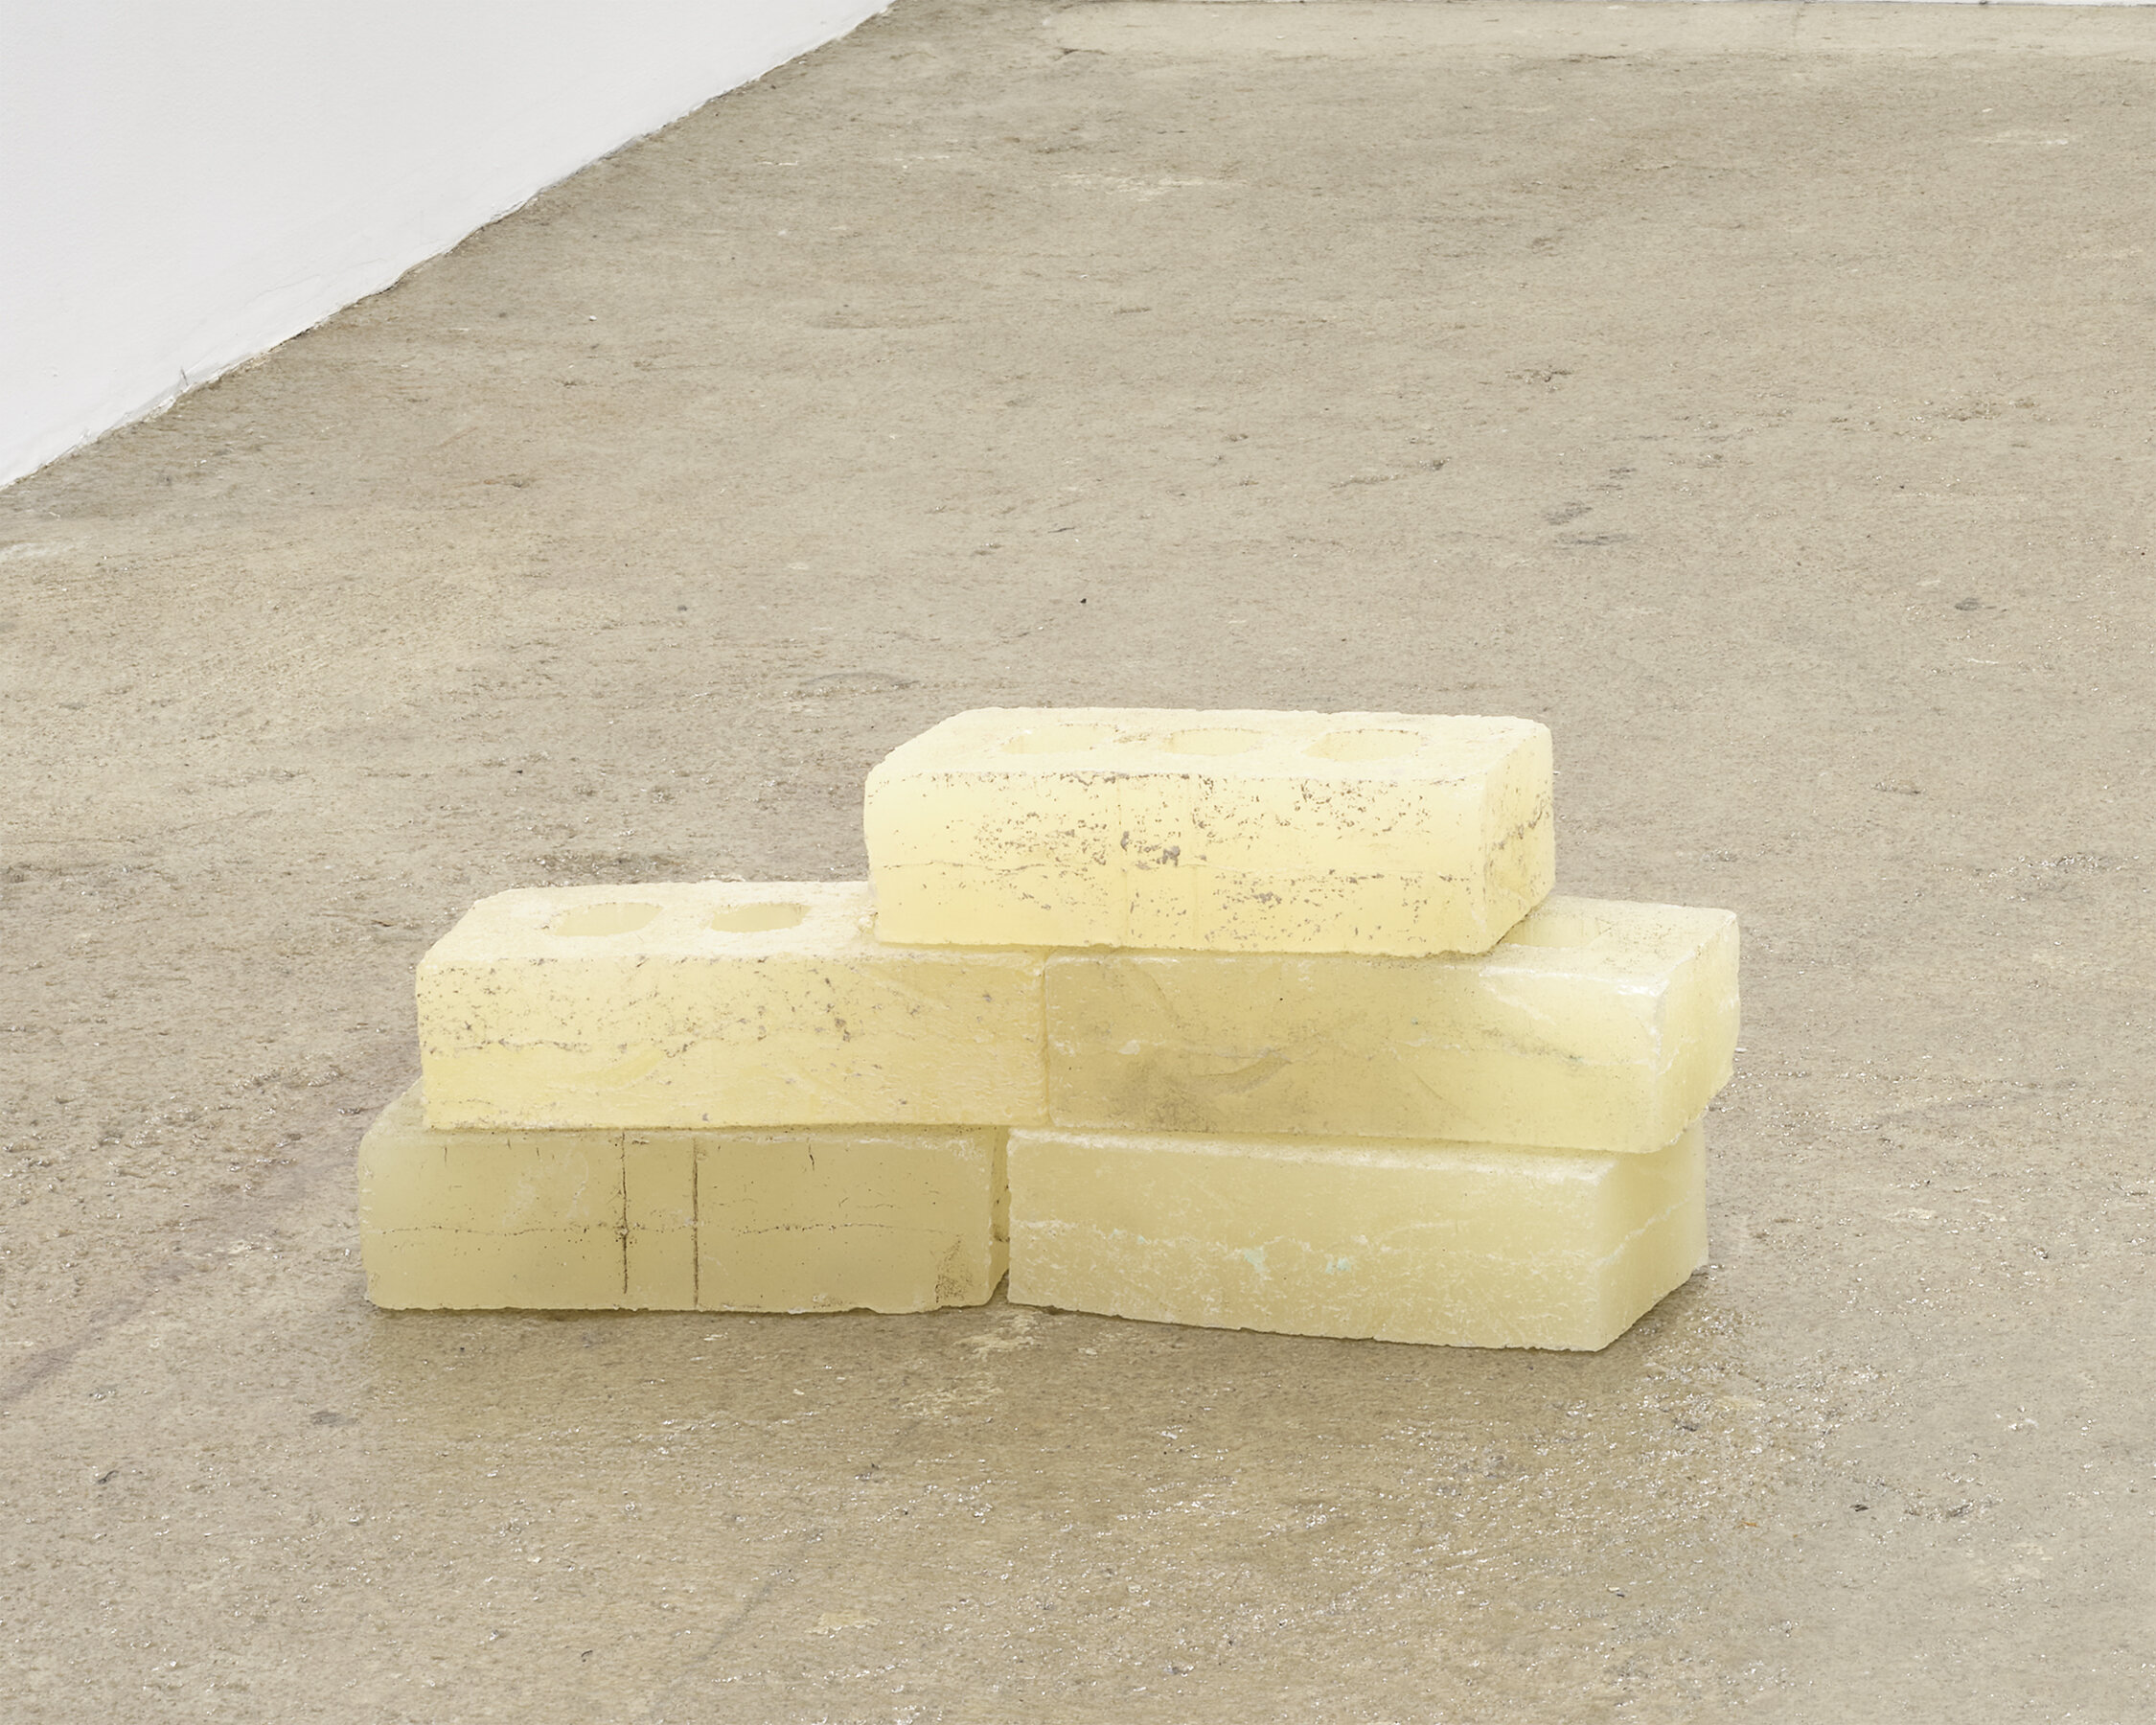  Sean Donovan Bricks , 2021 cast urethane resin 2 1/4 x 3 3/4 x 8 inches (6 x 10 x 20 cm) each SD57 – SD61 